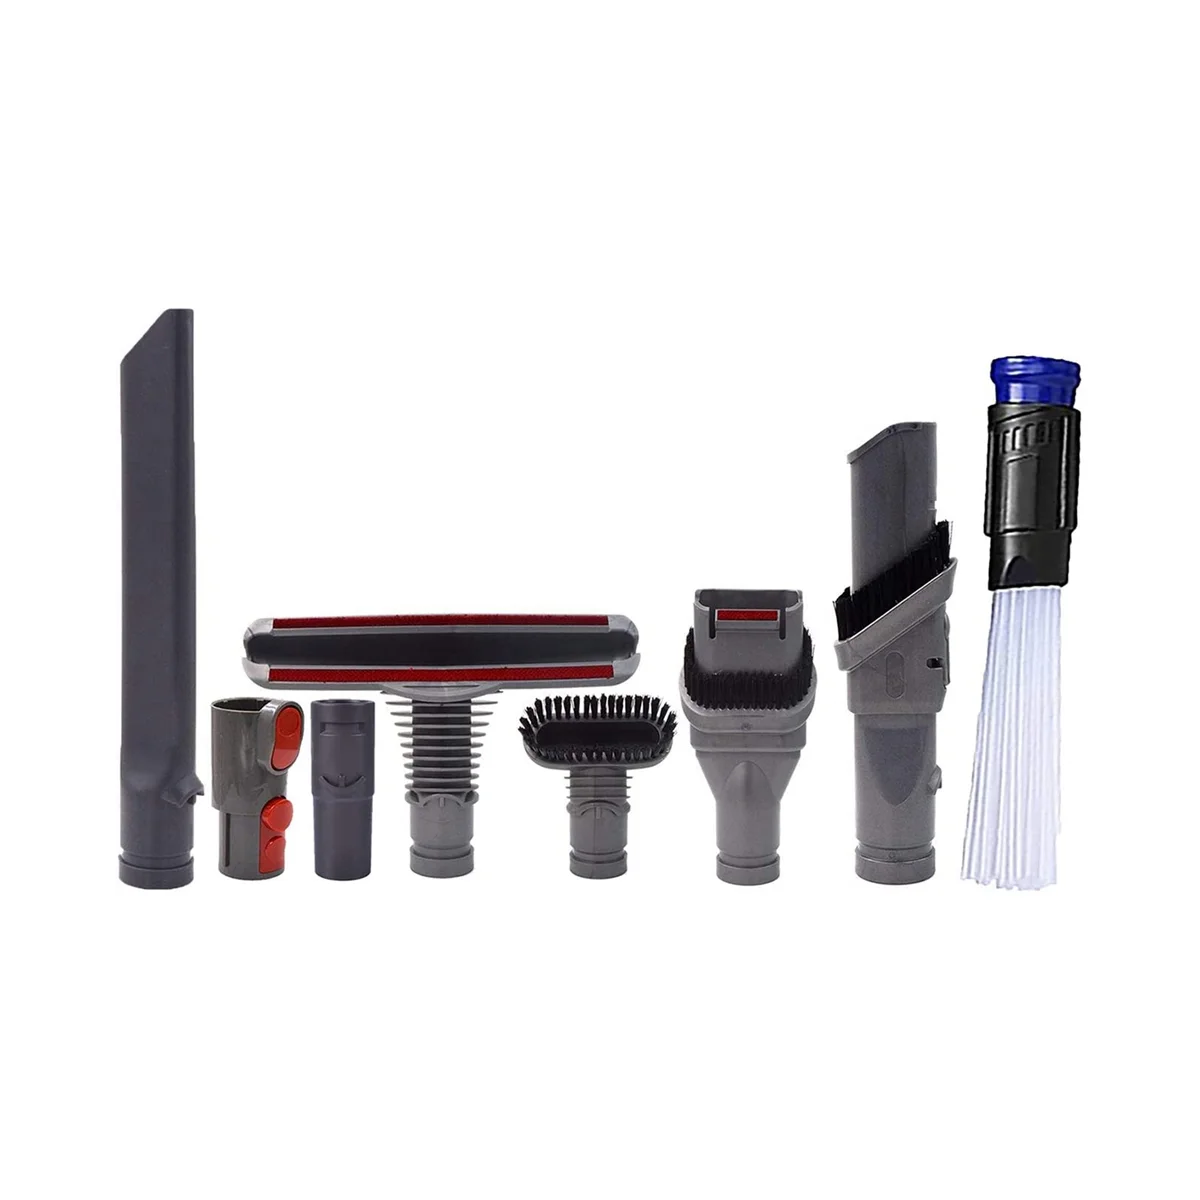 Replacement Attachments Tools Kit for V11 V10 V8 Absolute V8 Animal V7 V6 DC59 DC45 DC35 Brushes